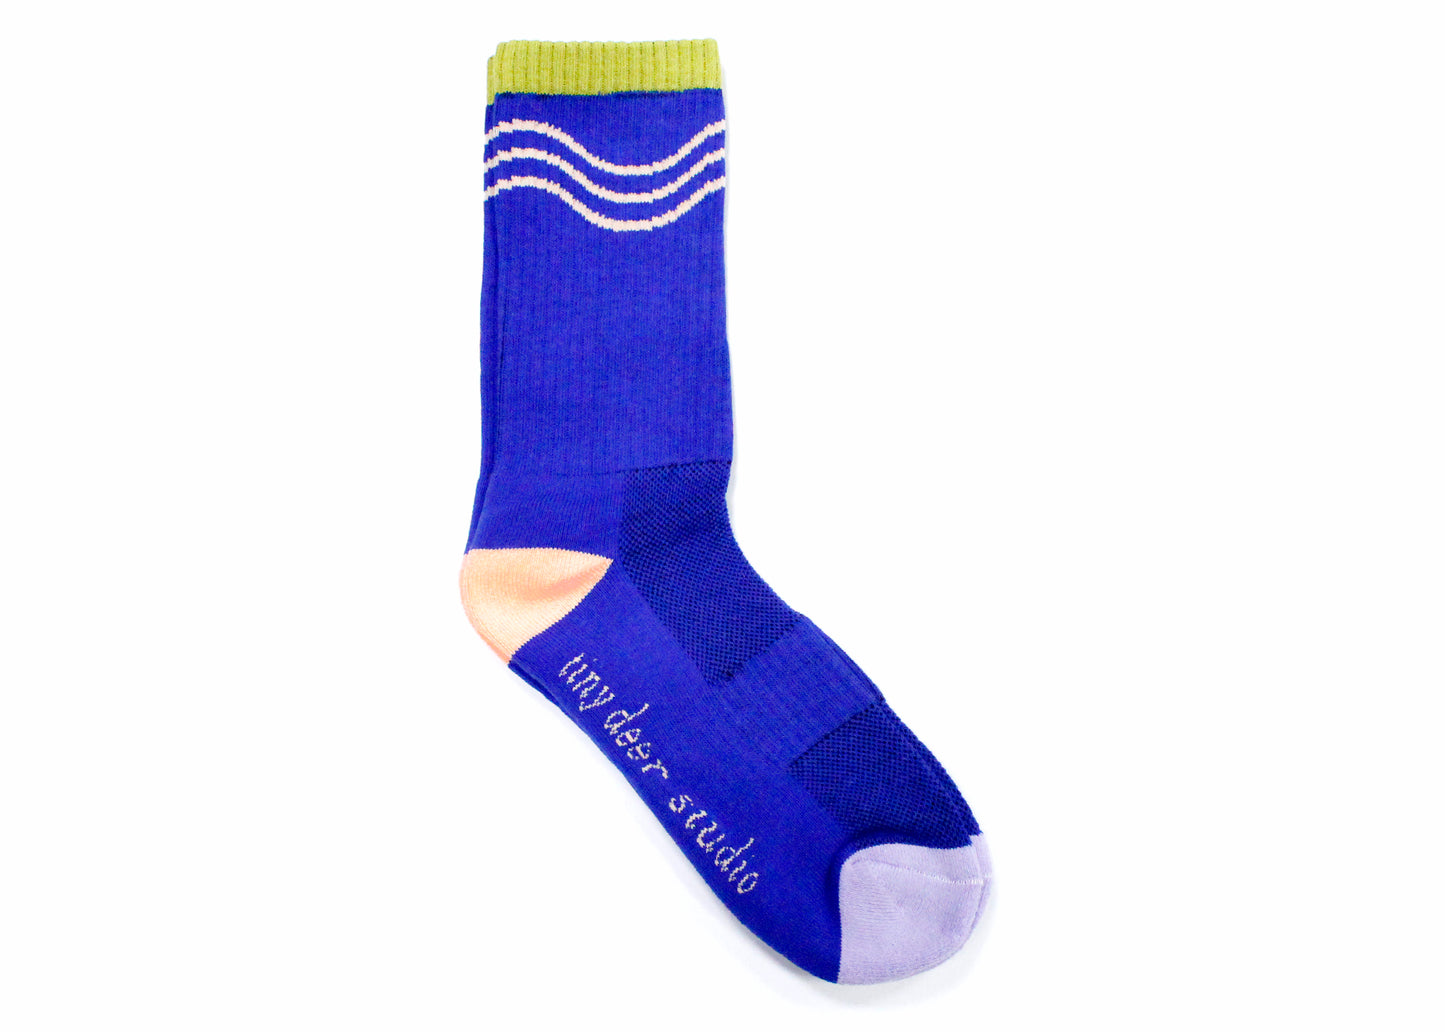 Athletic Waves Socks in Cobalt